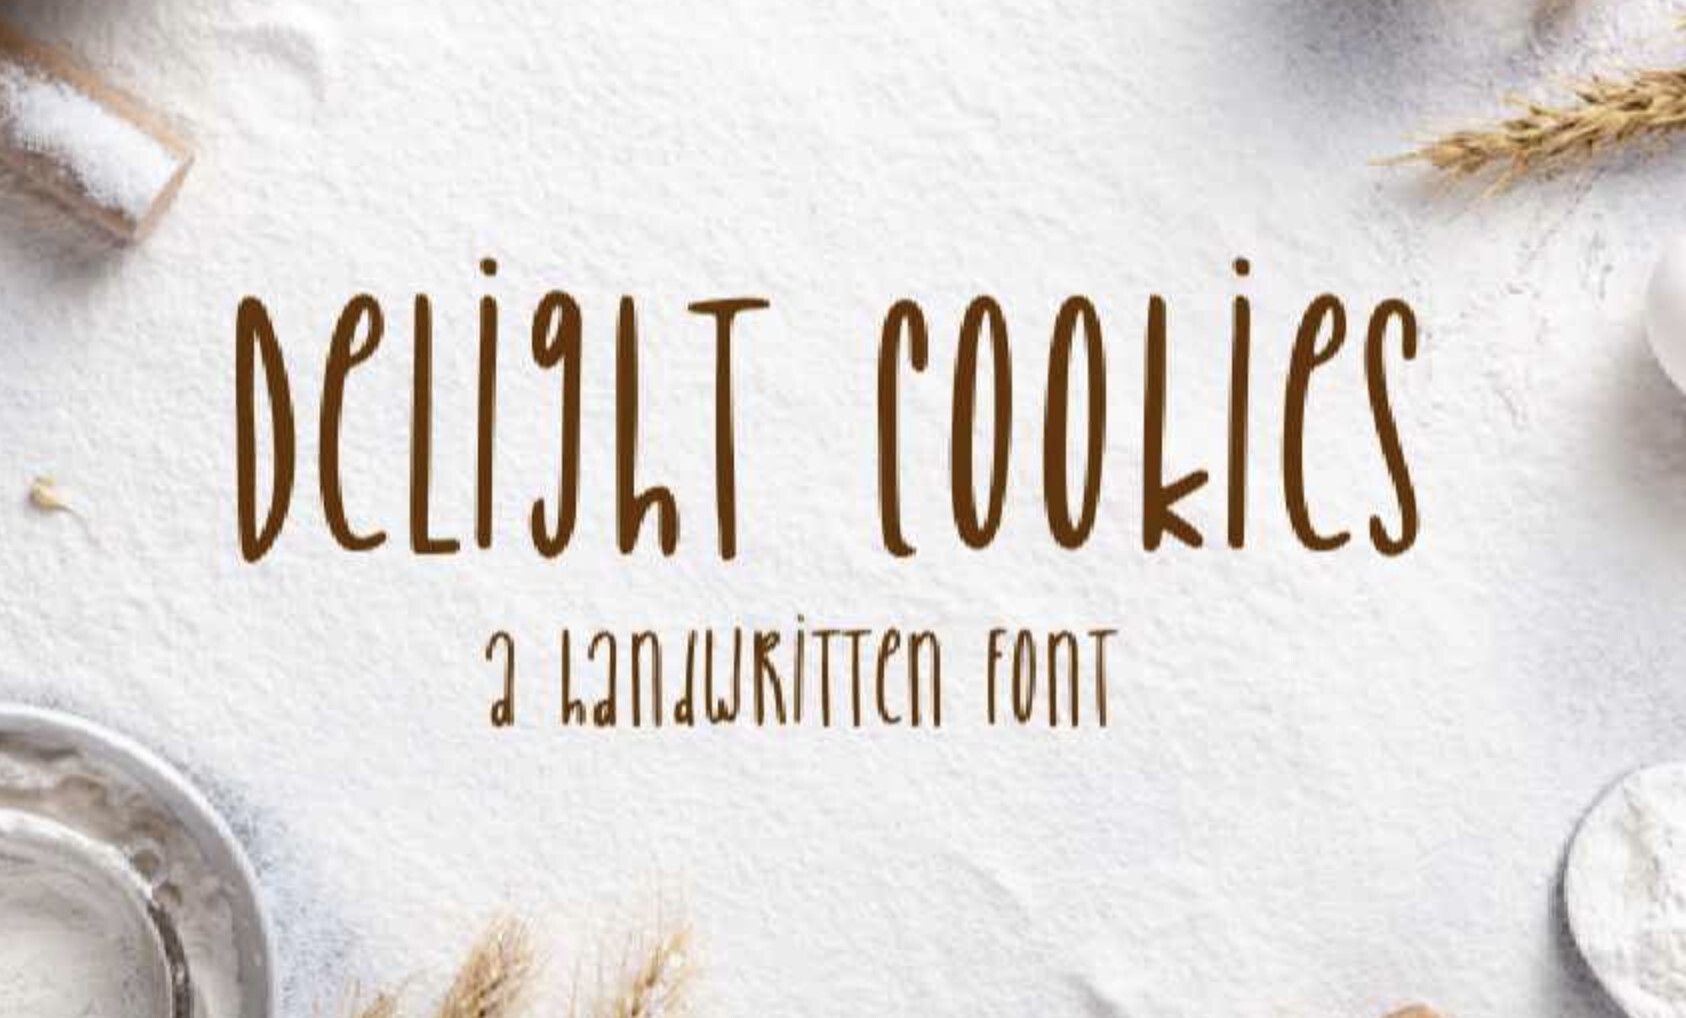 甜美精致独特的手写字体Delight Cookies